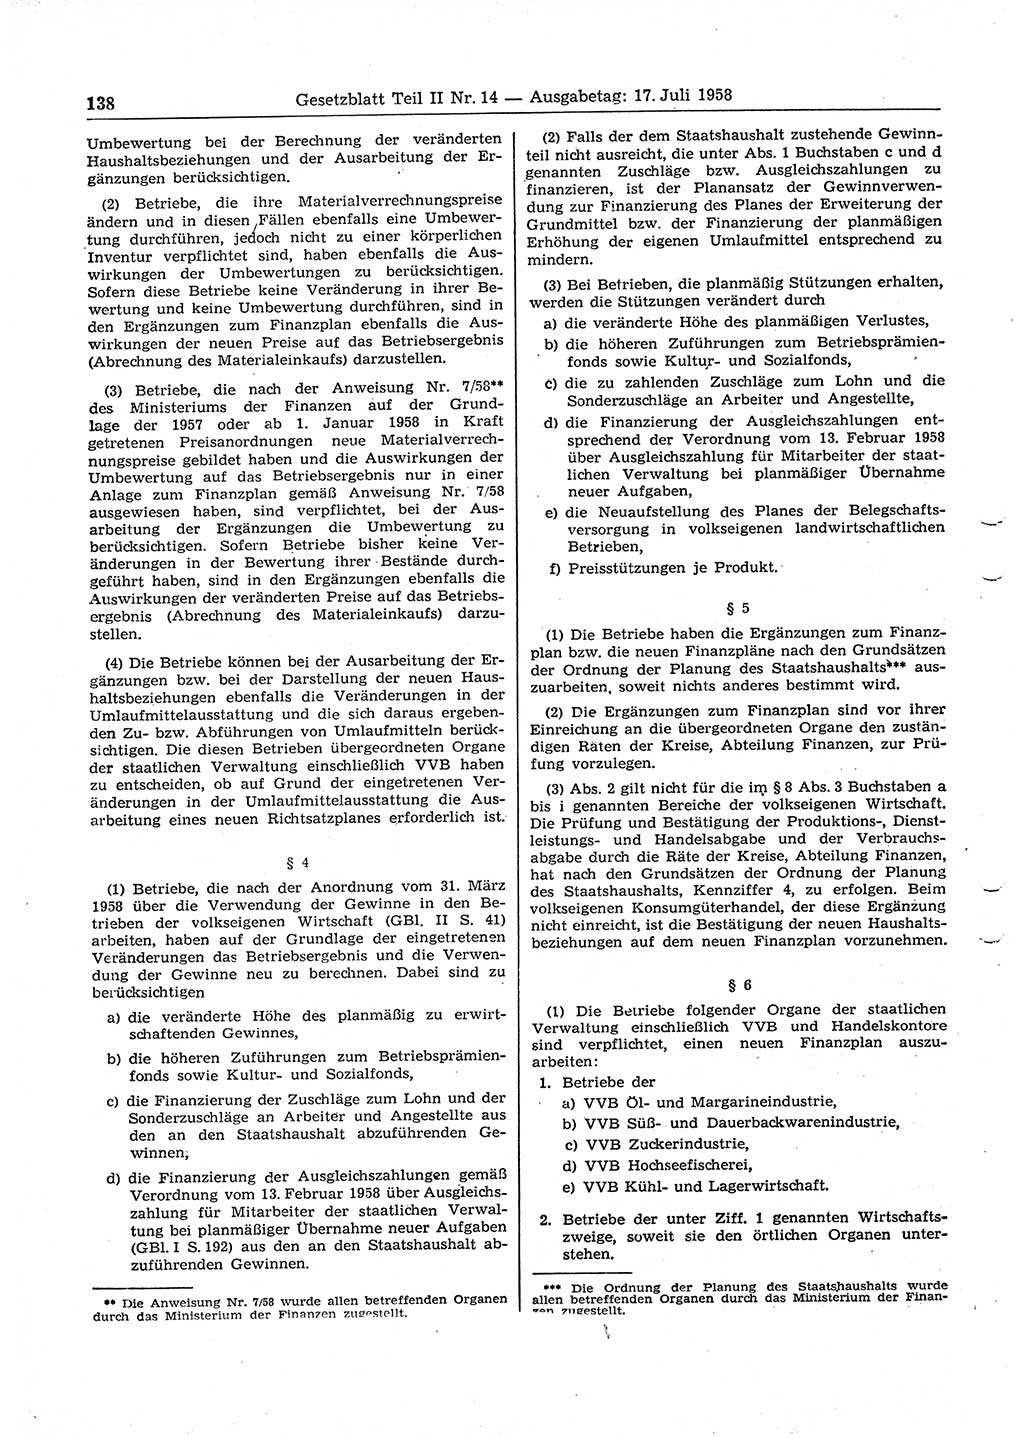 Gesetzblatt (GBl.) der Deutschen Demokratischen Republik (DDR) Teil ⅠⅠ 1958, Seite 138 (GBl. DDR ⅠⅠ 1958, S. 138)